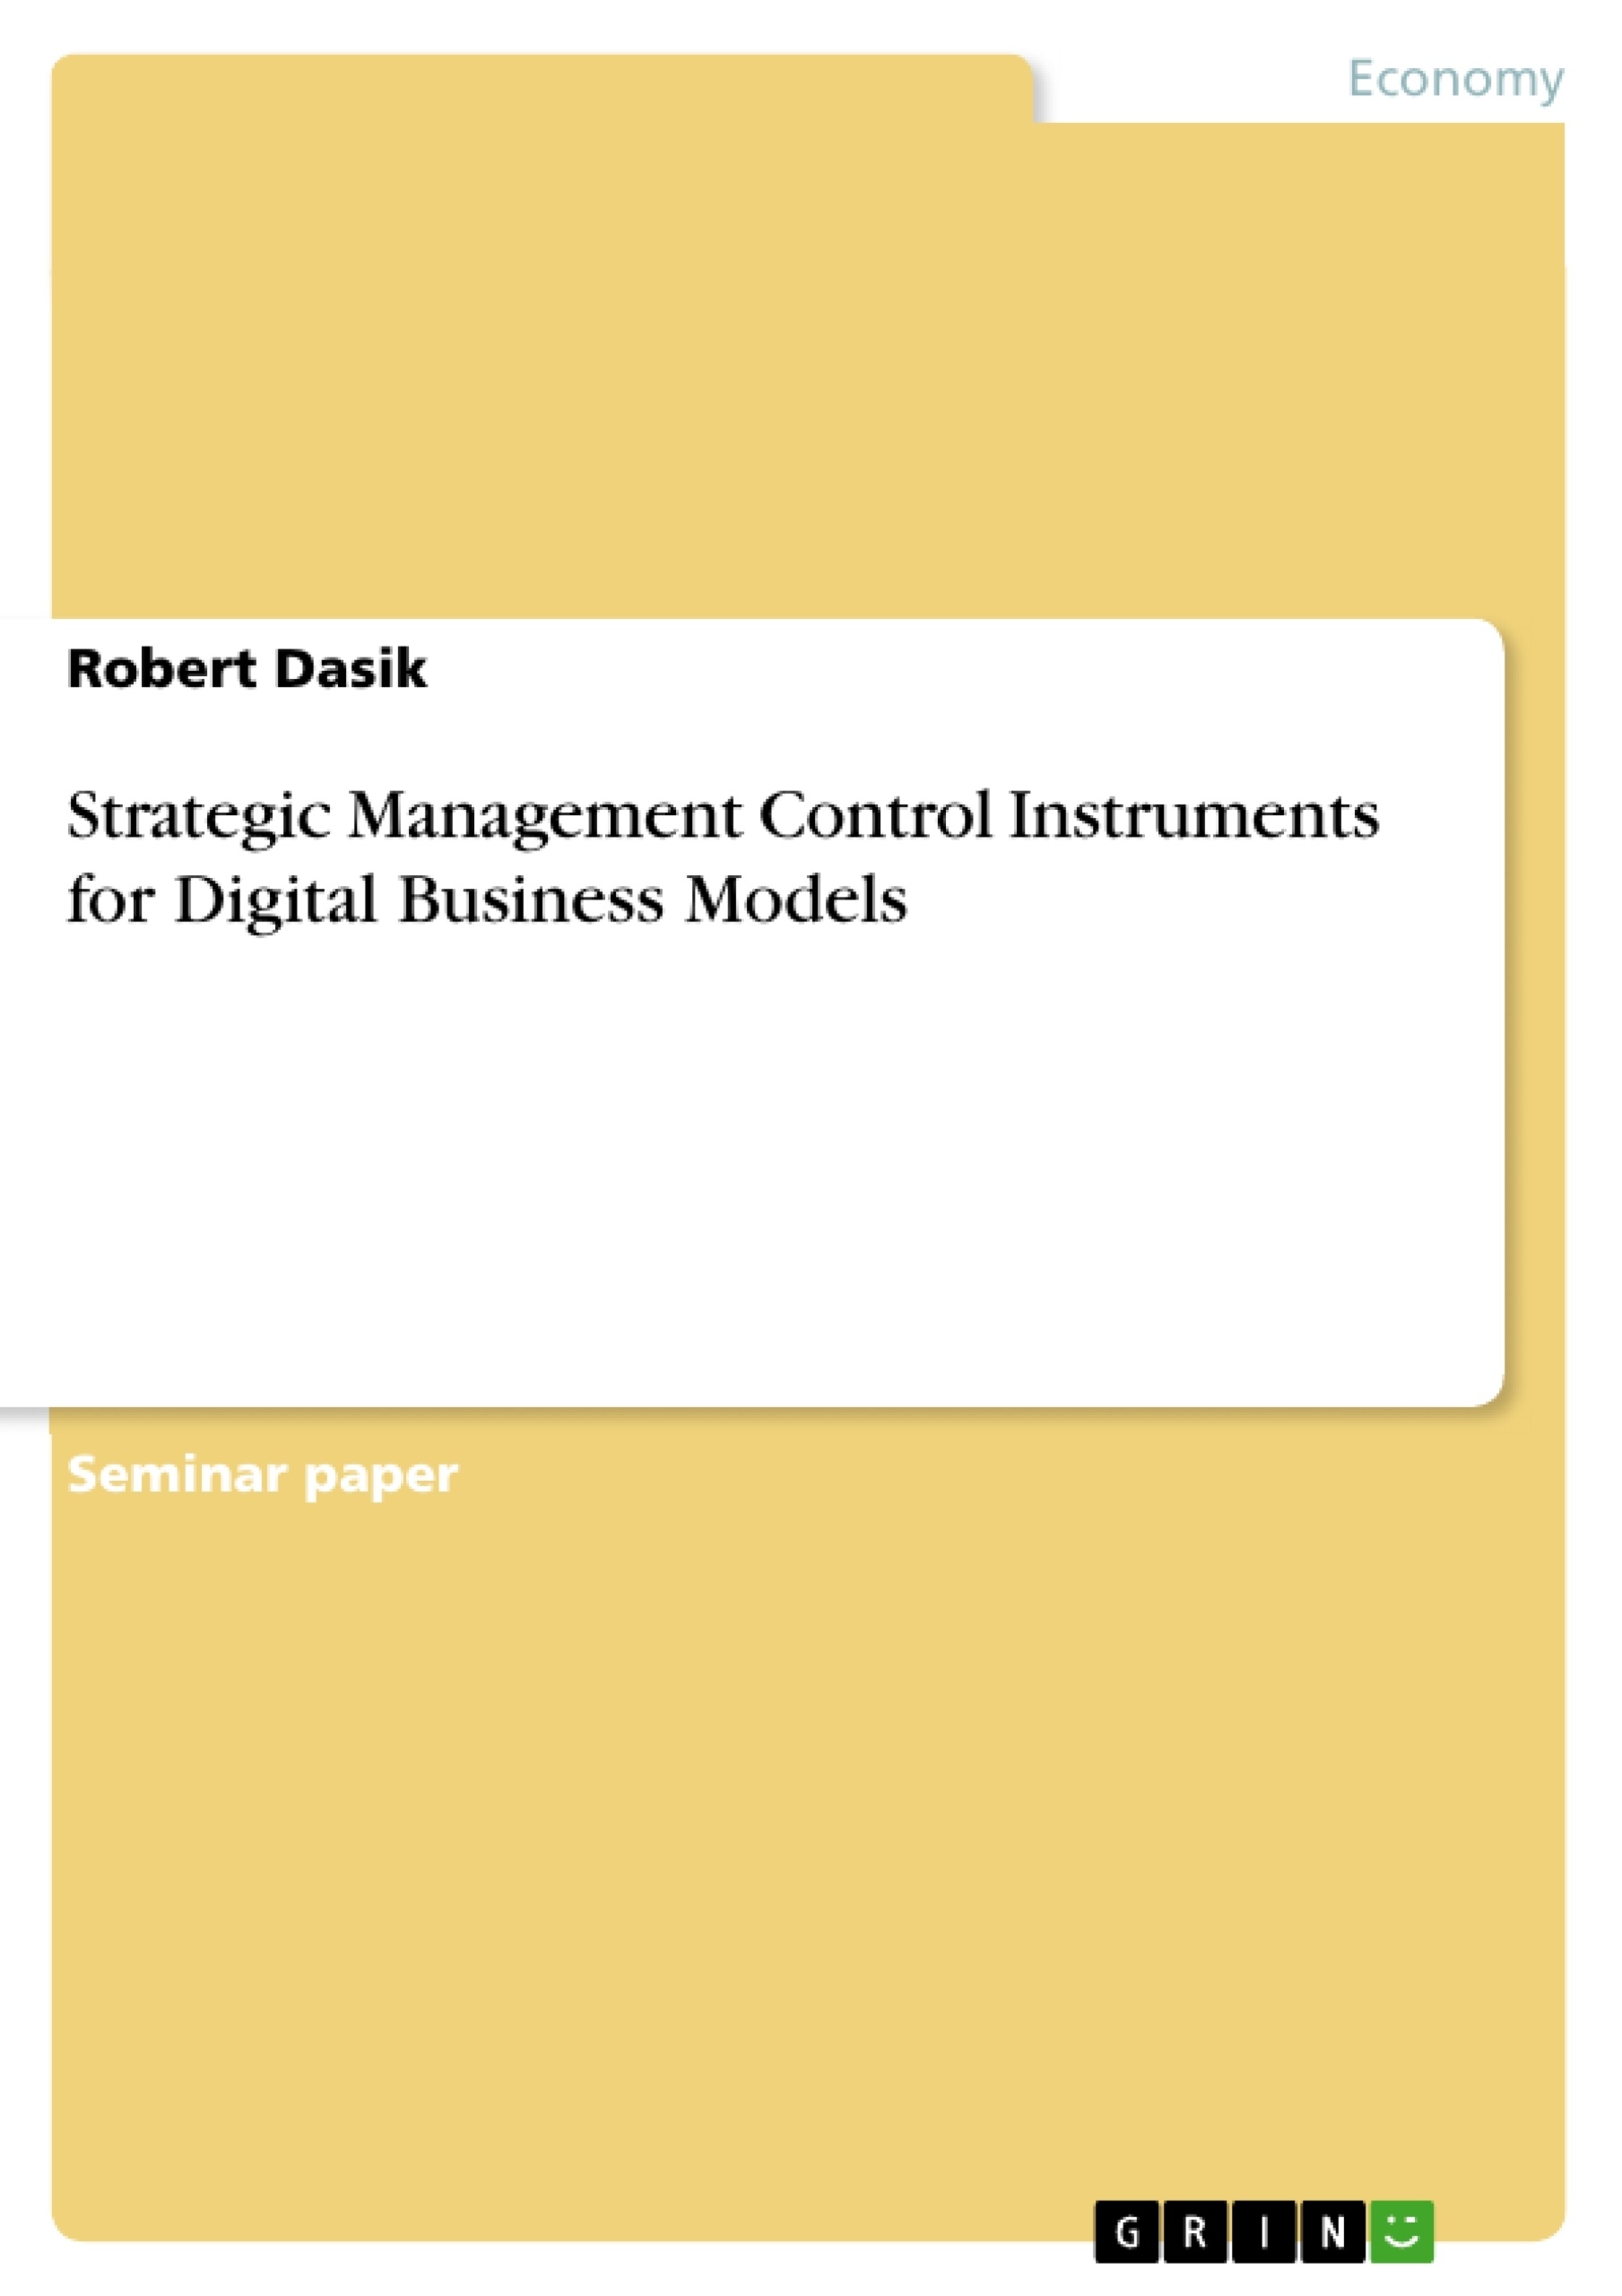 Title: Strategic Management Control Instruments for Digital Business Models